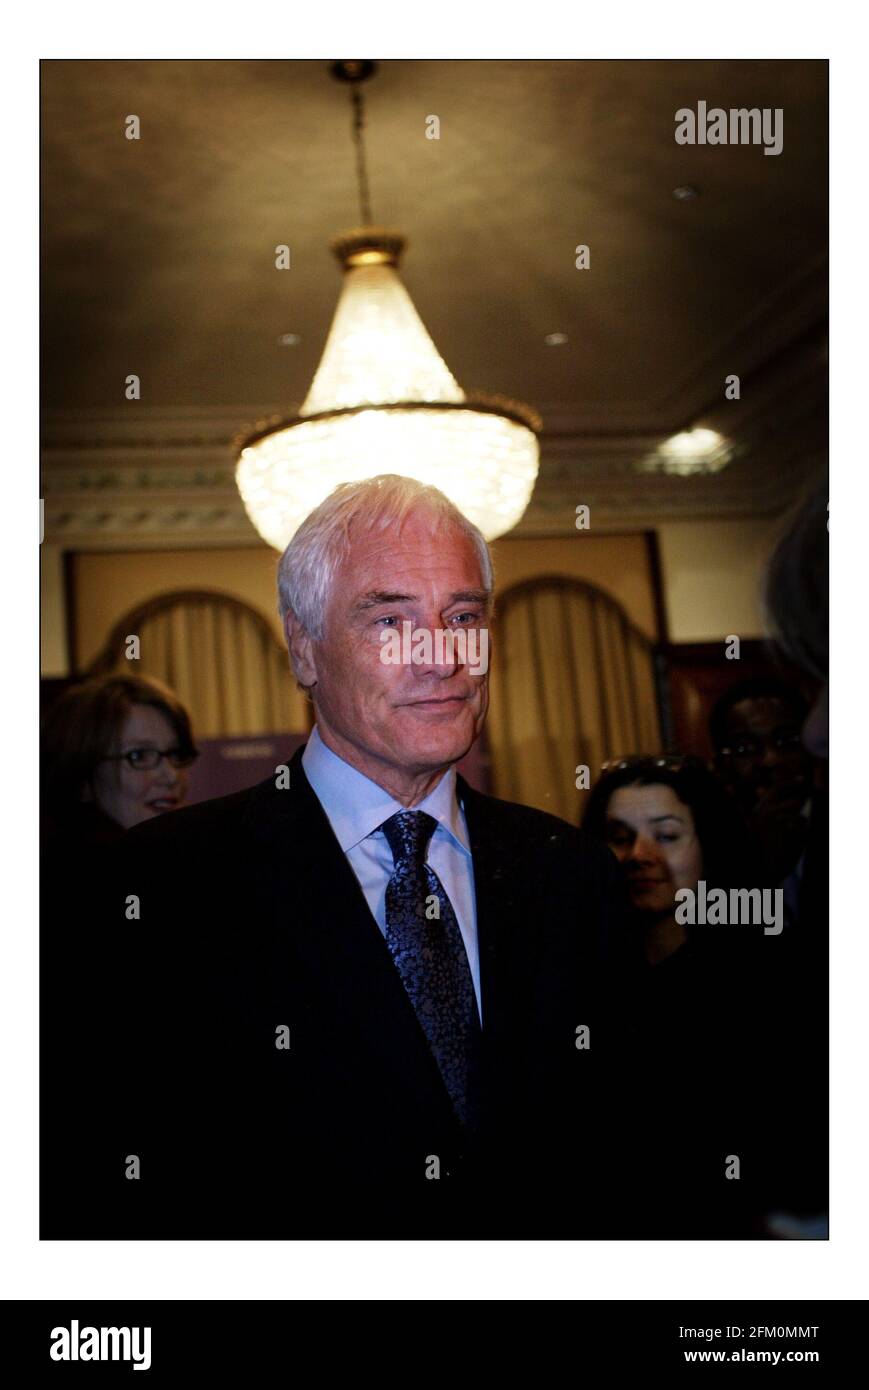 Robert Kilroy Silk gründet seine neue politische Partei 'VERITAS'pic David Sandison 1/2/2005 Stockfoto